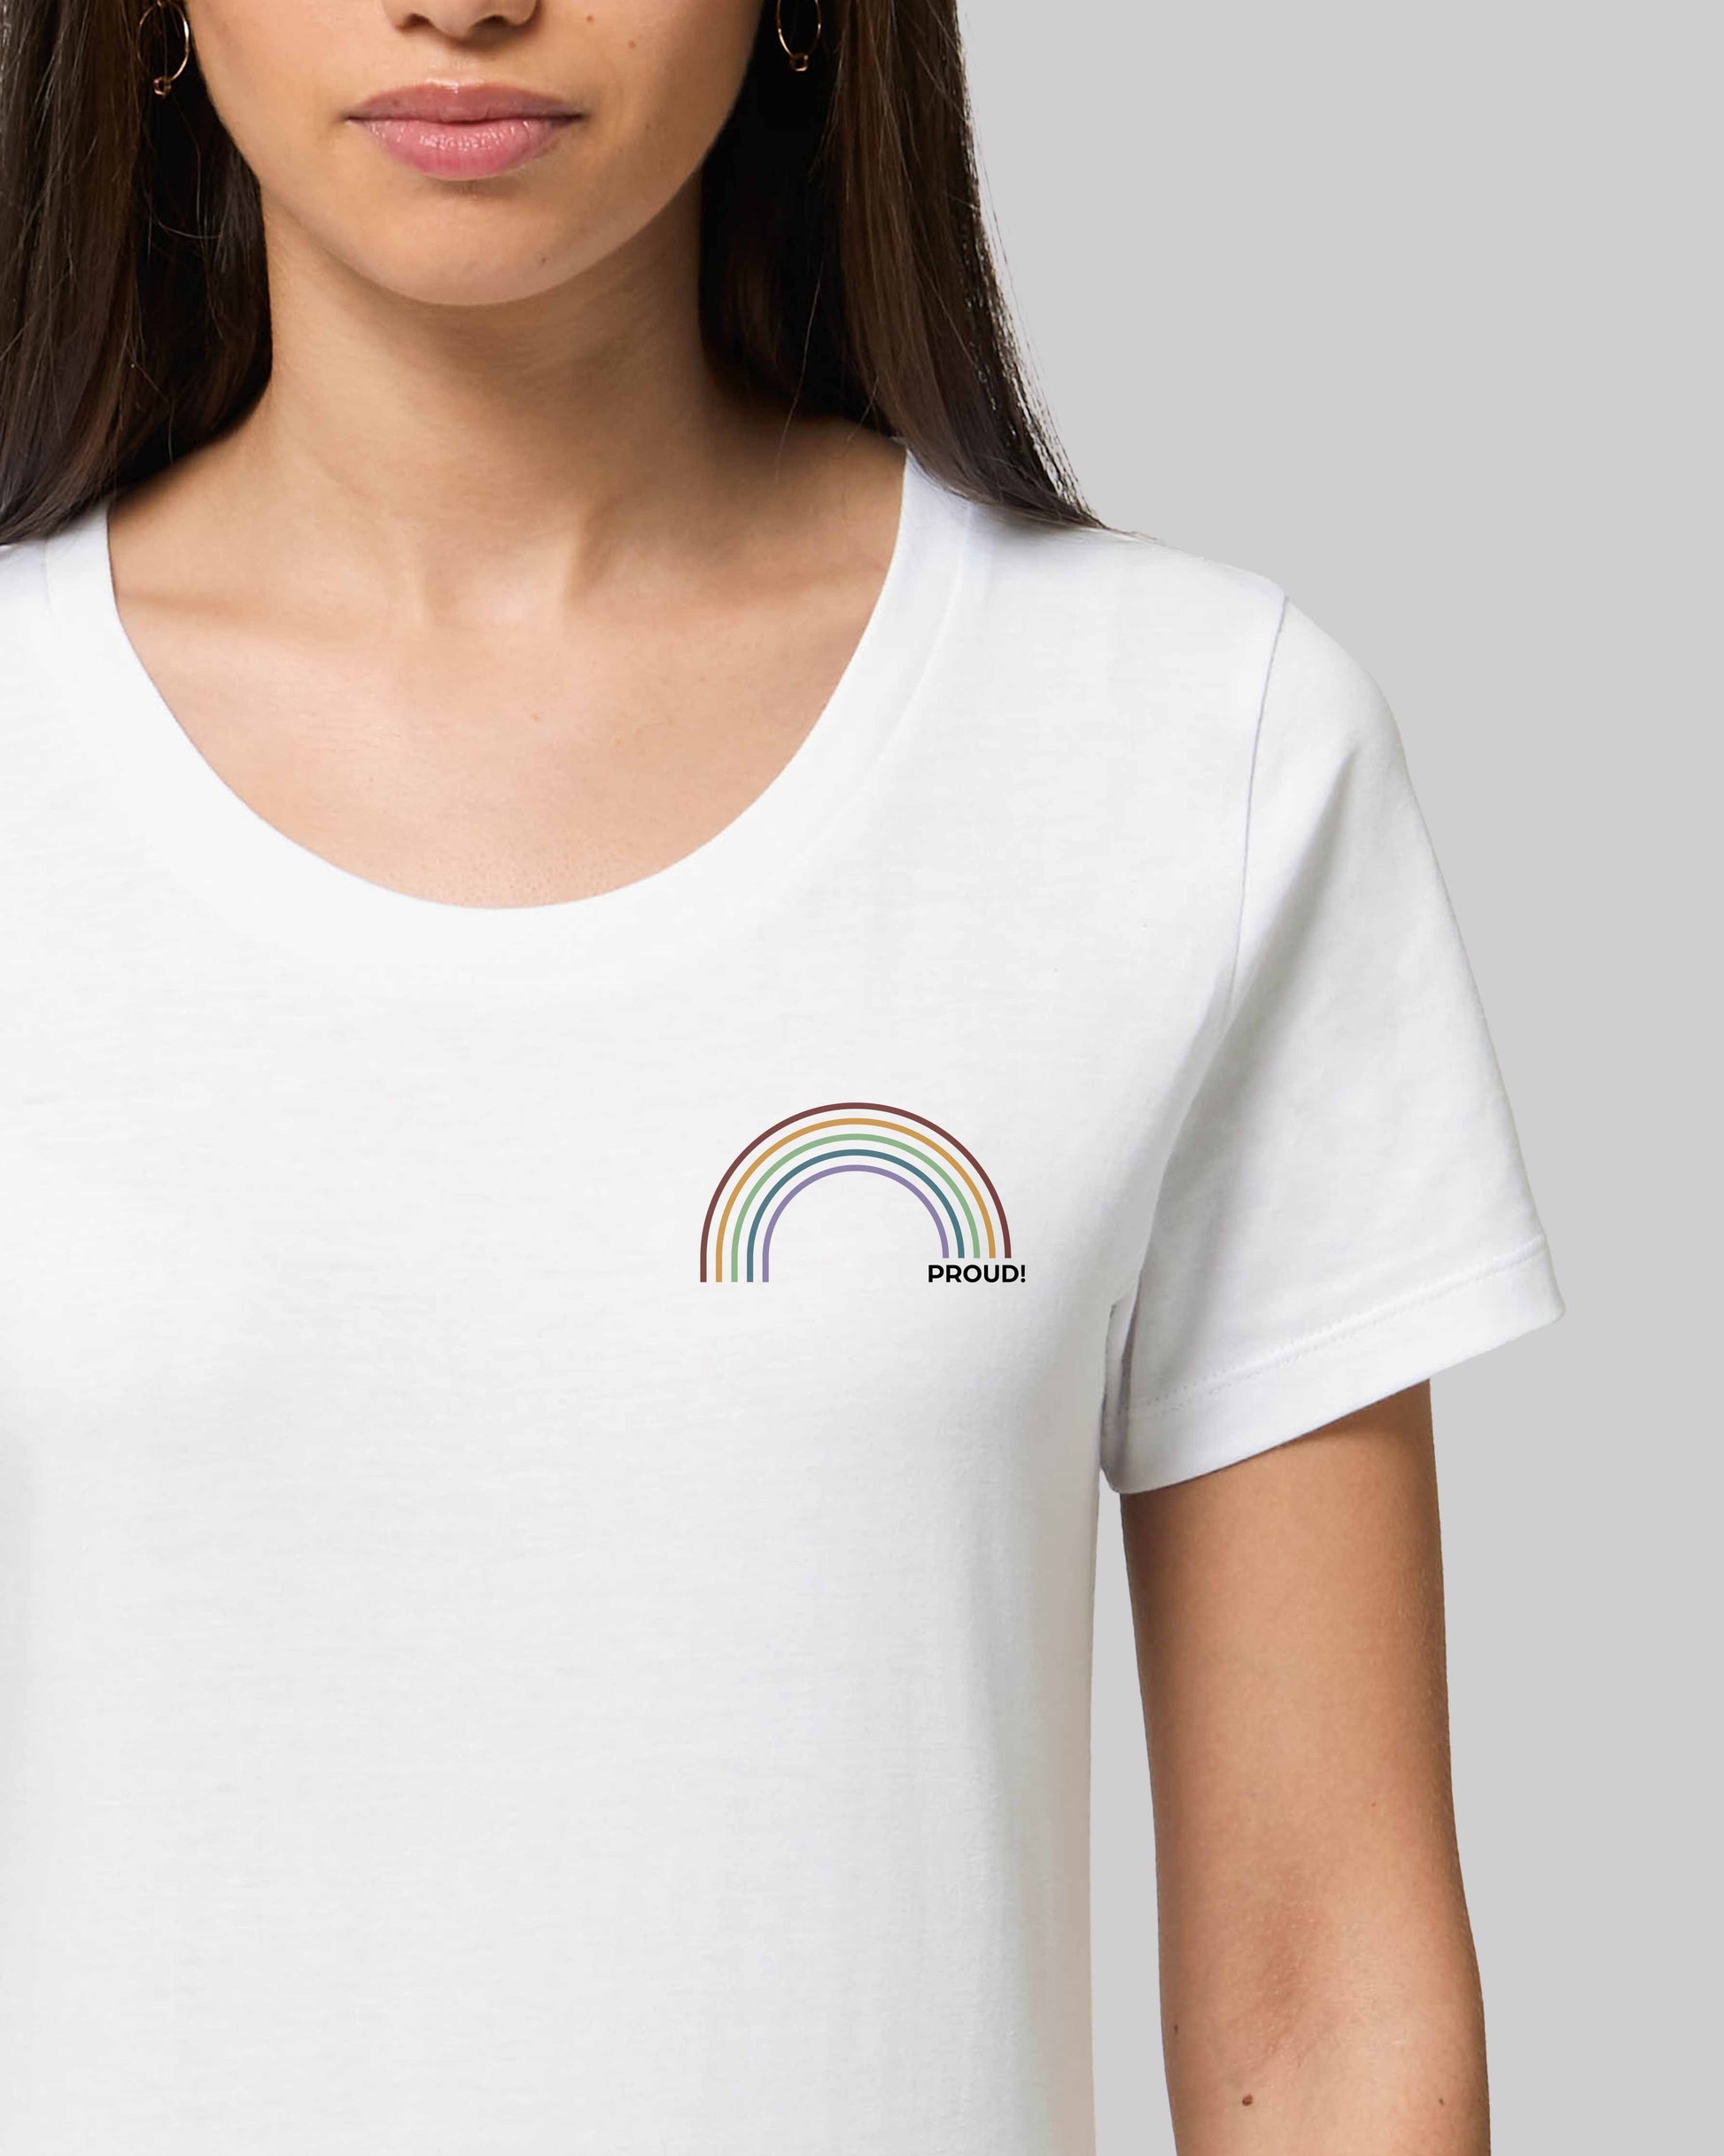 EINHORST® Organic Shirt tailliert in "Weiß" mit dem Motiv "proud Regenbogen" in der Kombination bunter Regenbogen mit schwarzer Schrift, Bild von weiblicher Person mit Shirt